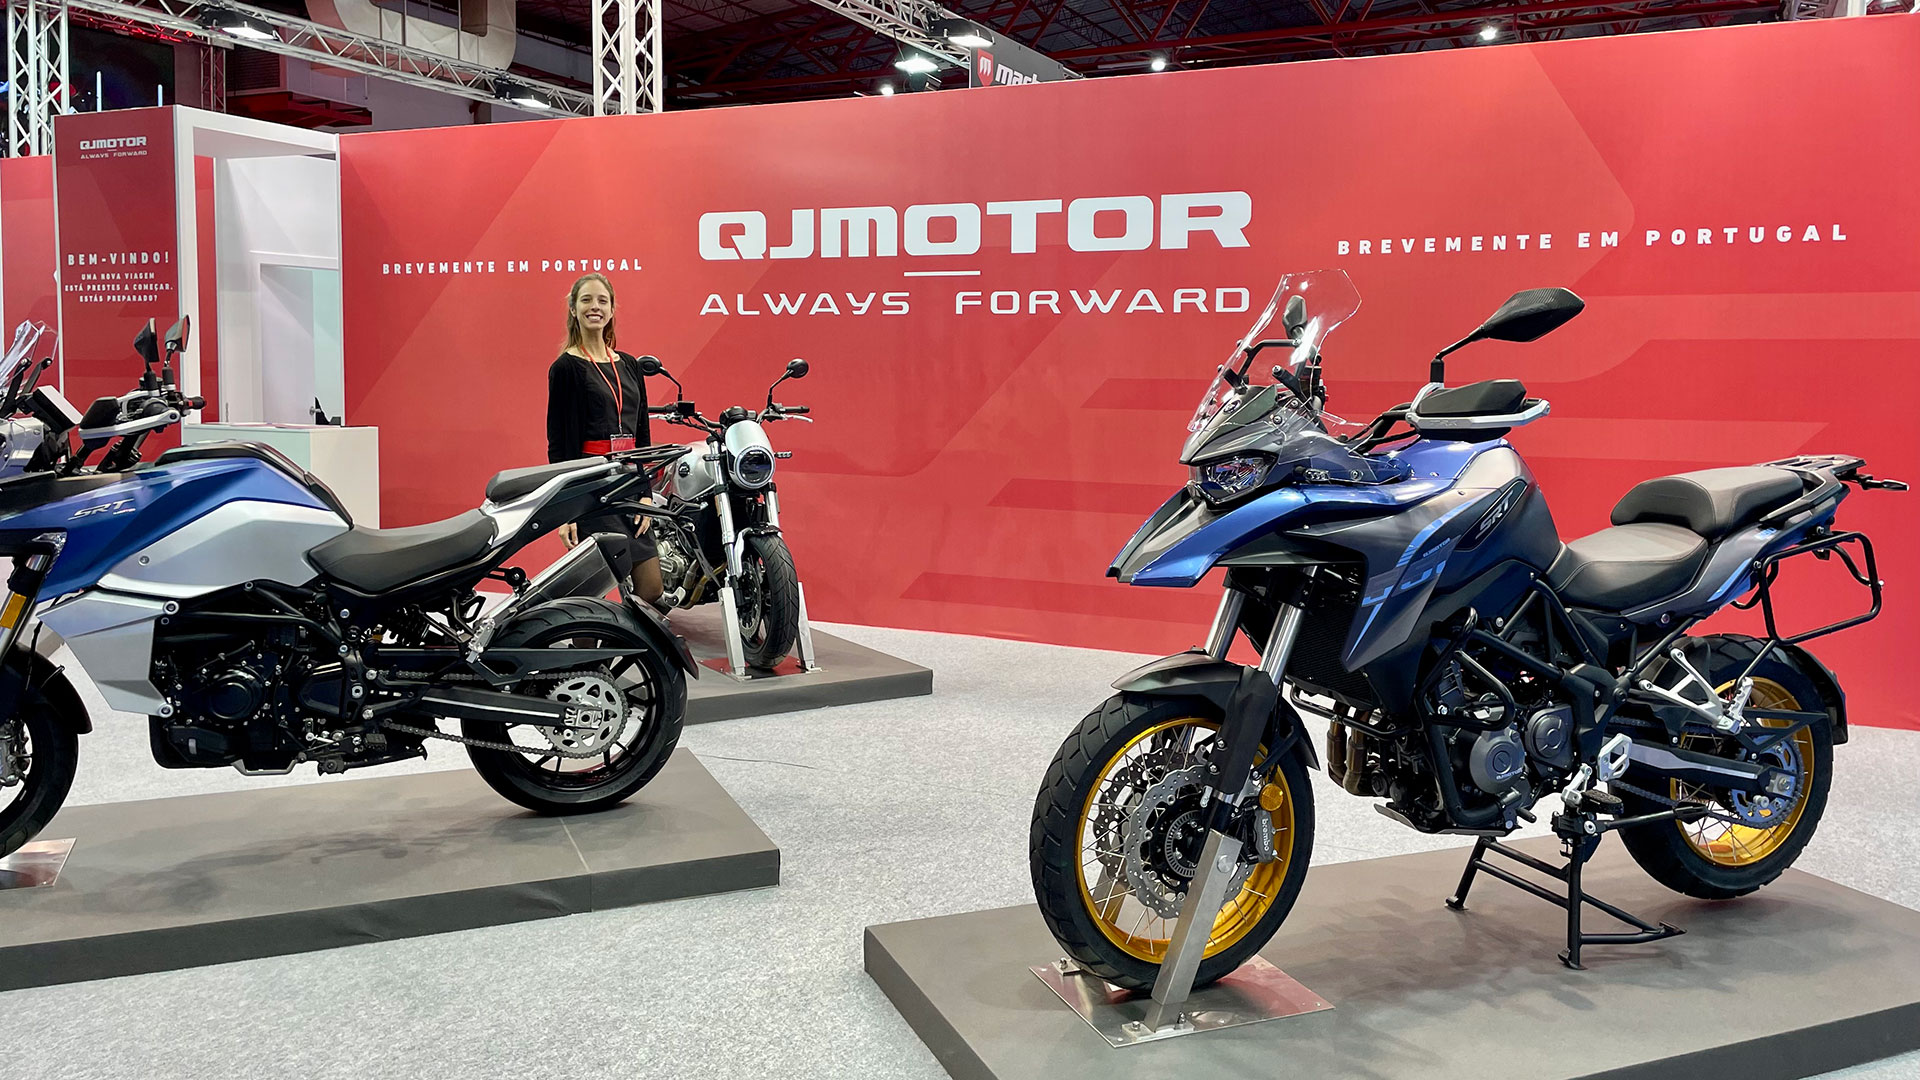 QJ Motor comercializará sus motocicletas a partir de septiembre